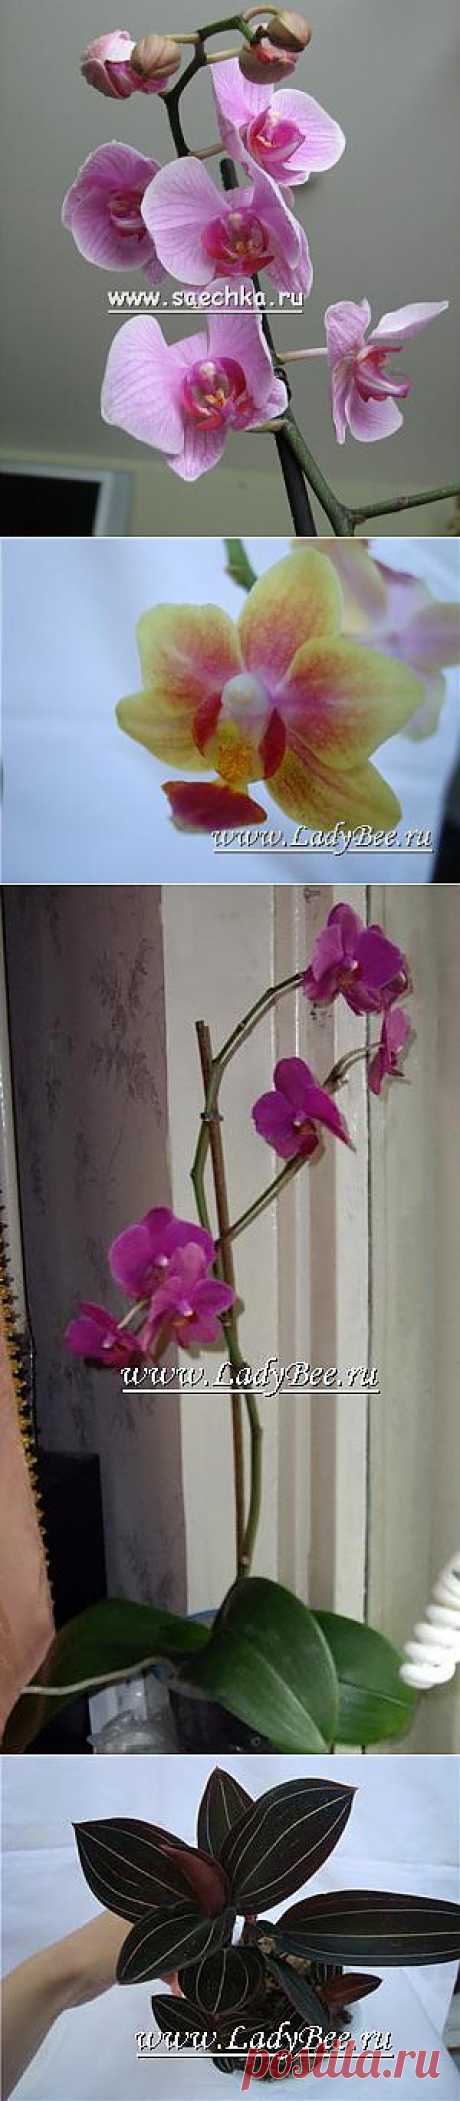 Орхидея (Orchidaceae) - комнатные растения и цветы для сада: выращивание, местоположение, температура, полив, пересаживание, размножение, болезни и вредители